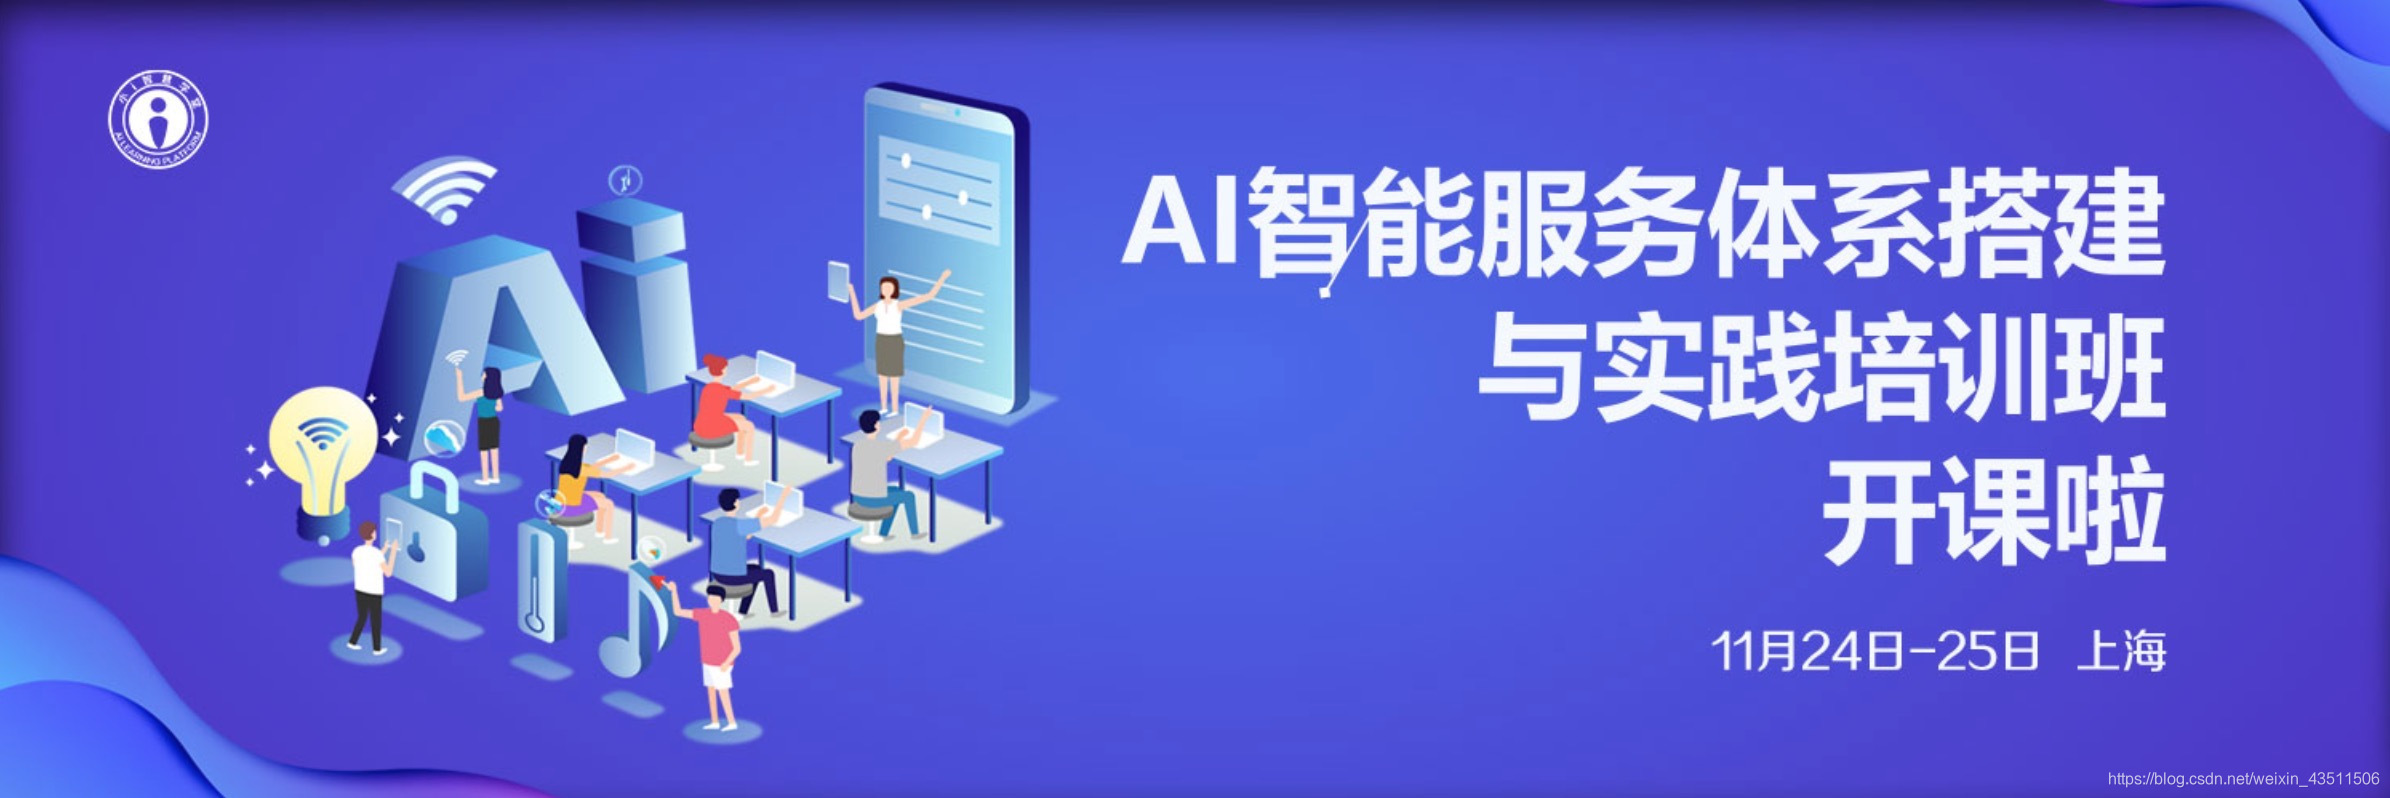 AI智能服务体系搭建与实践培训班11月24-25日上海开课